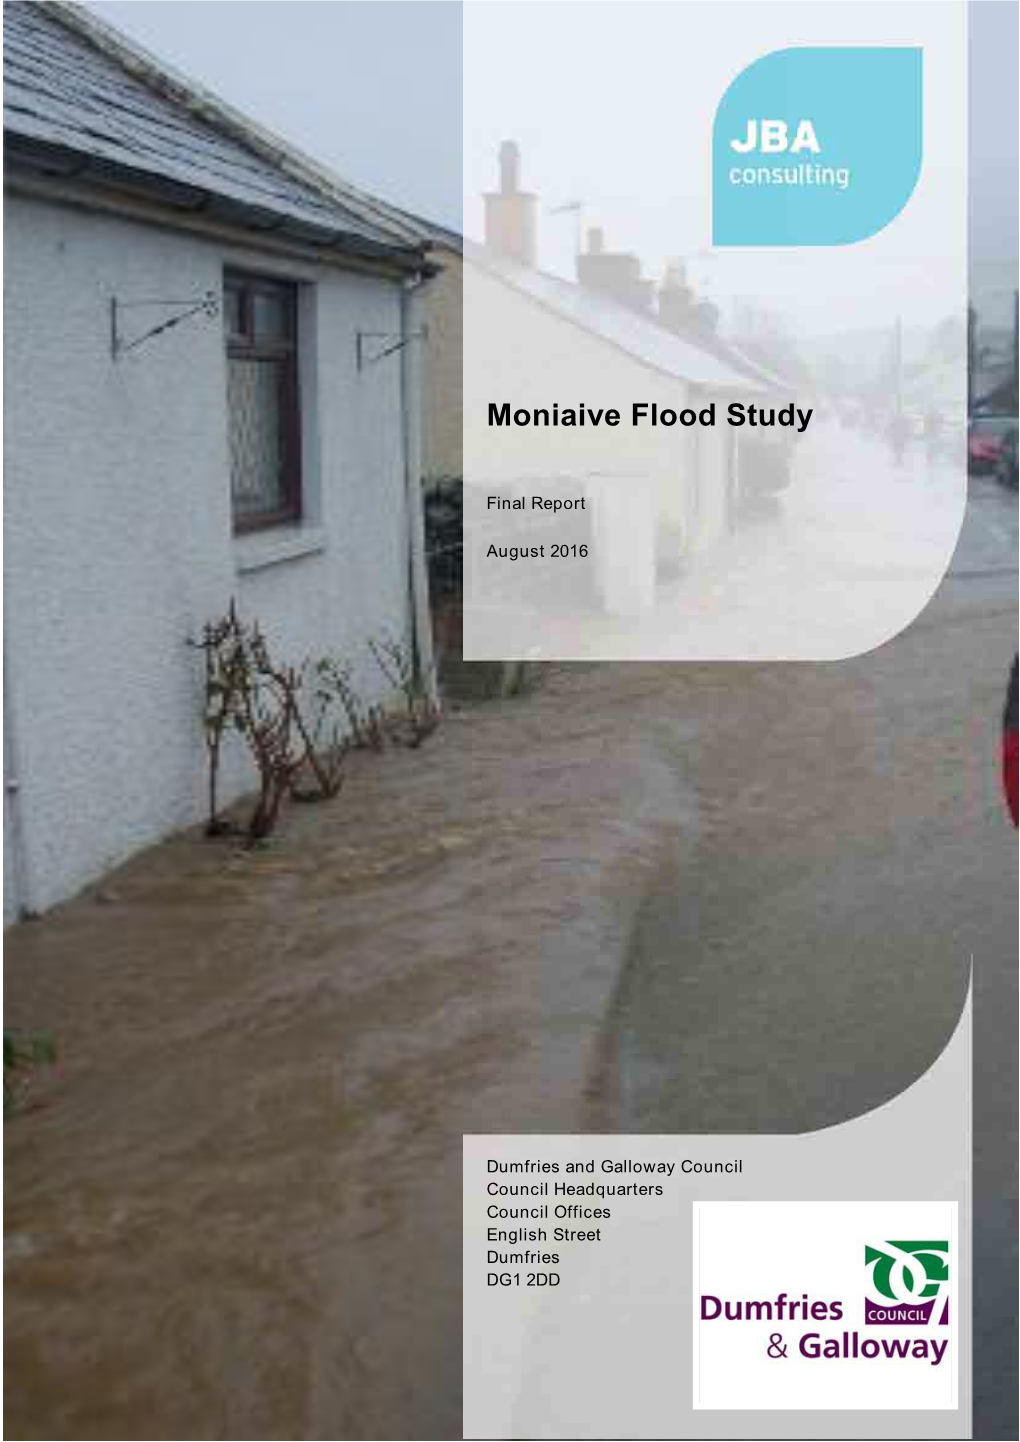 View the Moniaive Flood Study